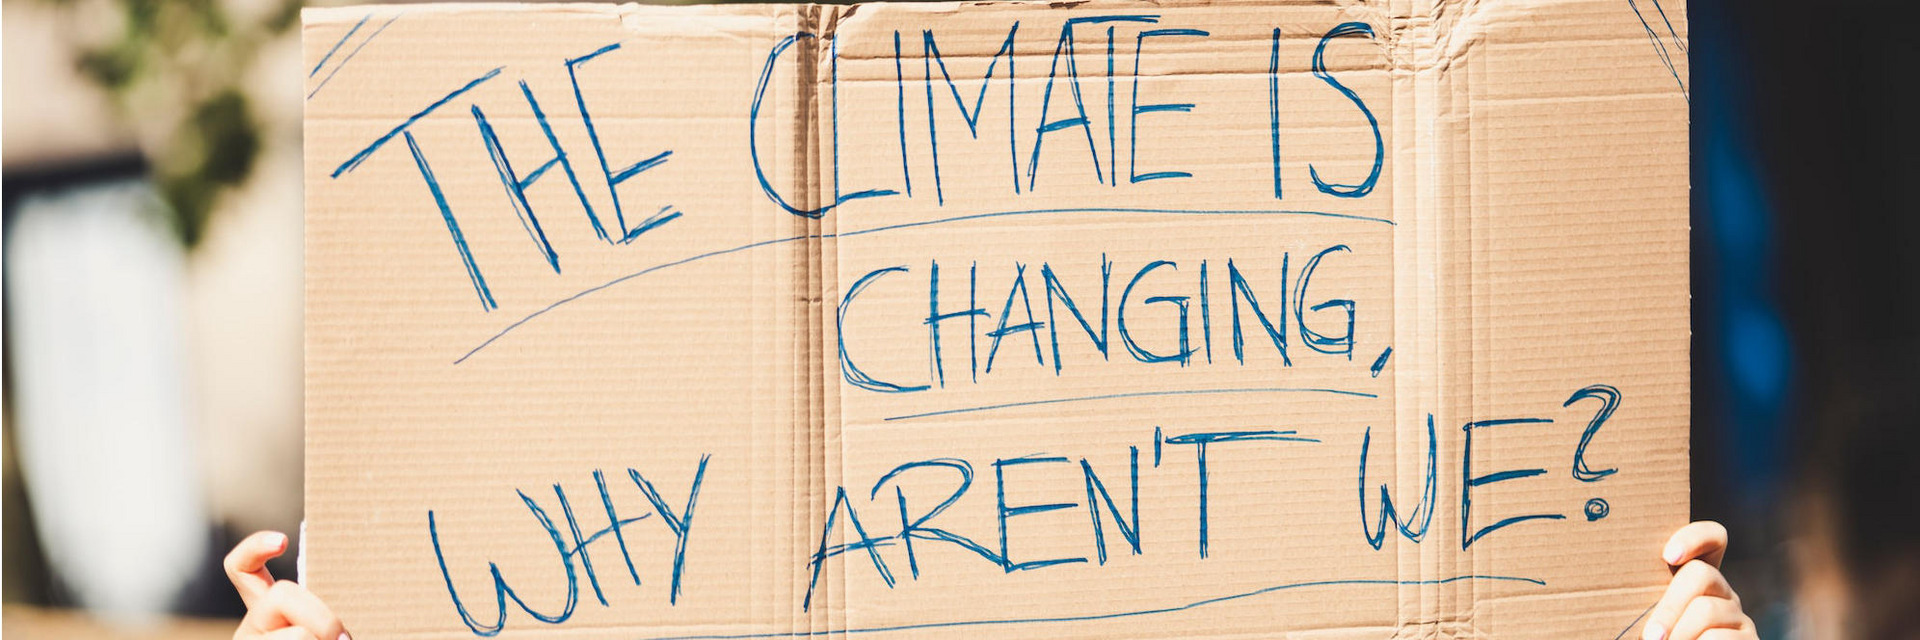 Auf einem Protest hält eine Person ein Schild in die Höhe, auf dem steht: „The climate is changing, why aren’t we?“ (deutsch: „Das Klima ändert sich, warum ändern wir uns nicht?“)